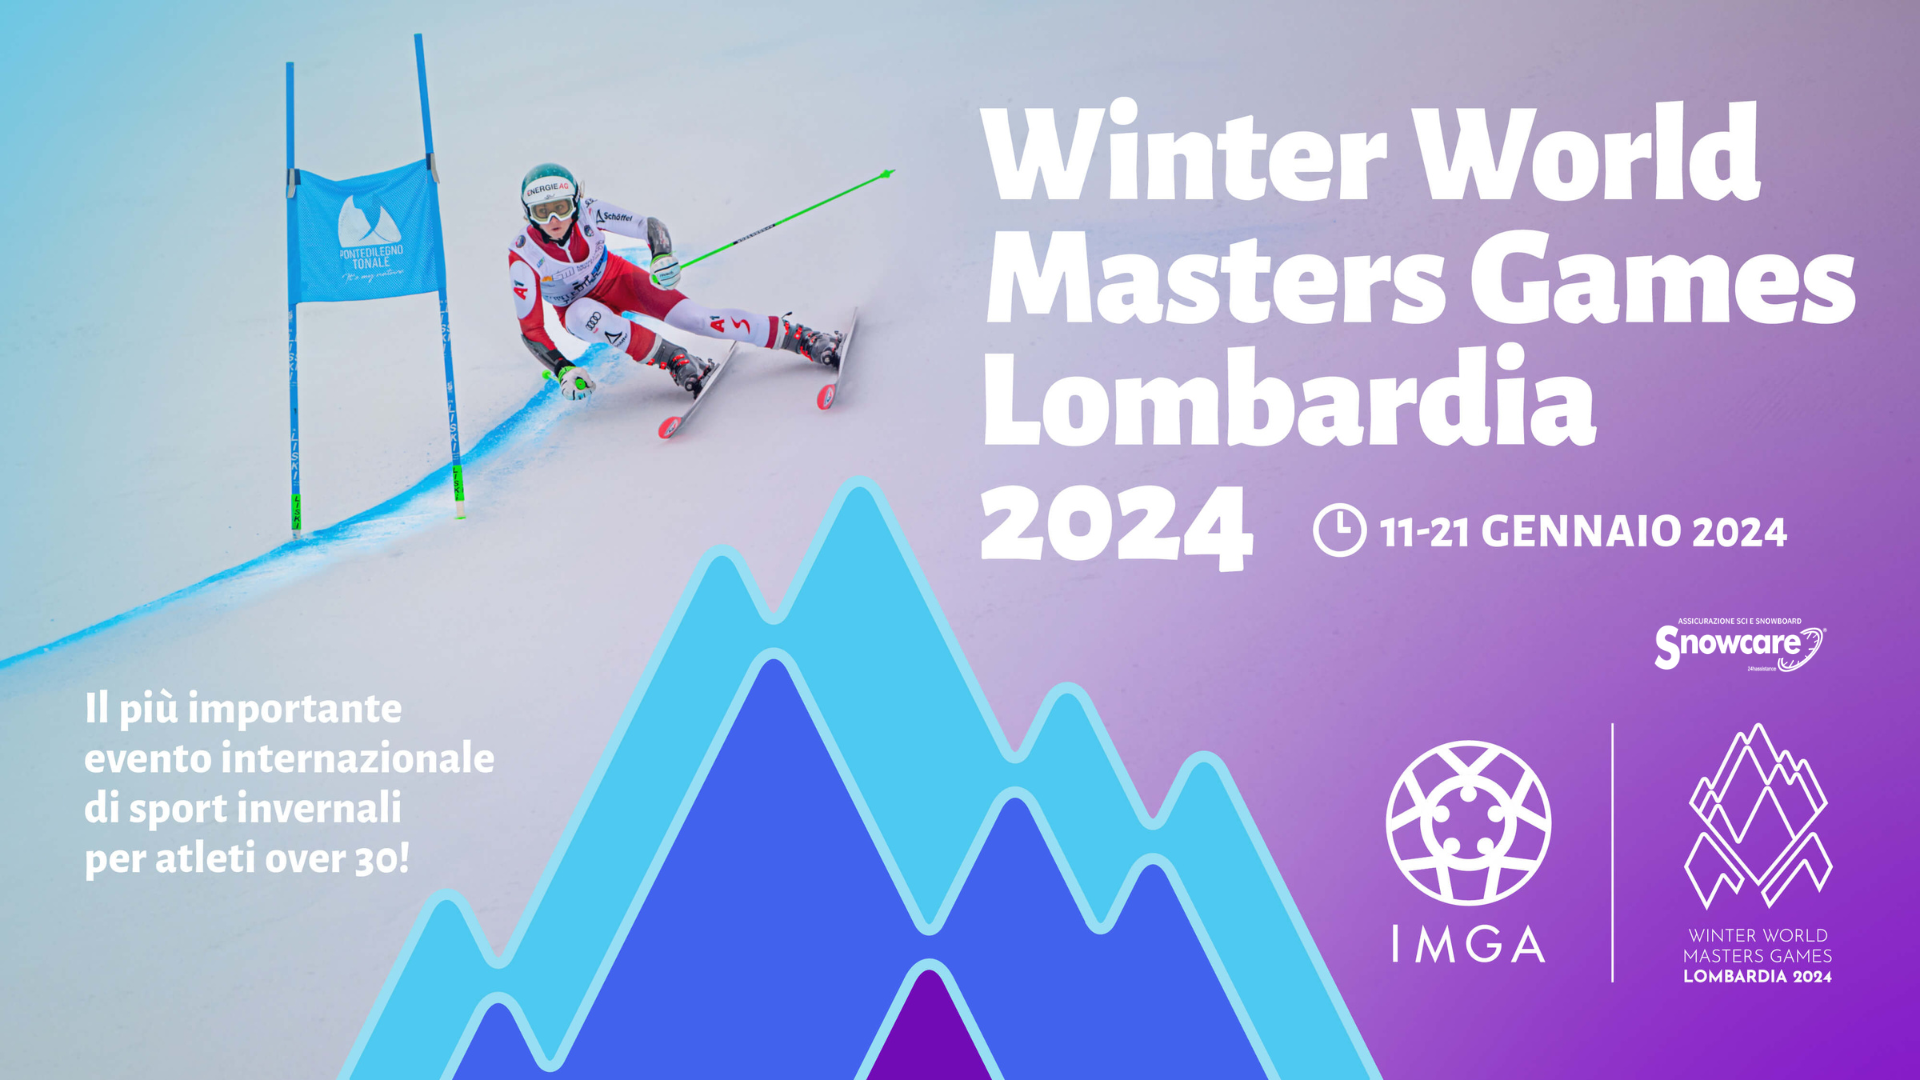 Snowcare l'assicurazione sponsor di Winter World Master Games!